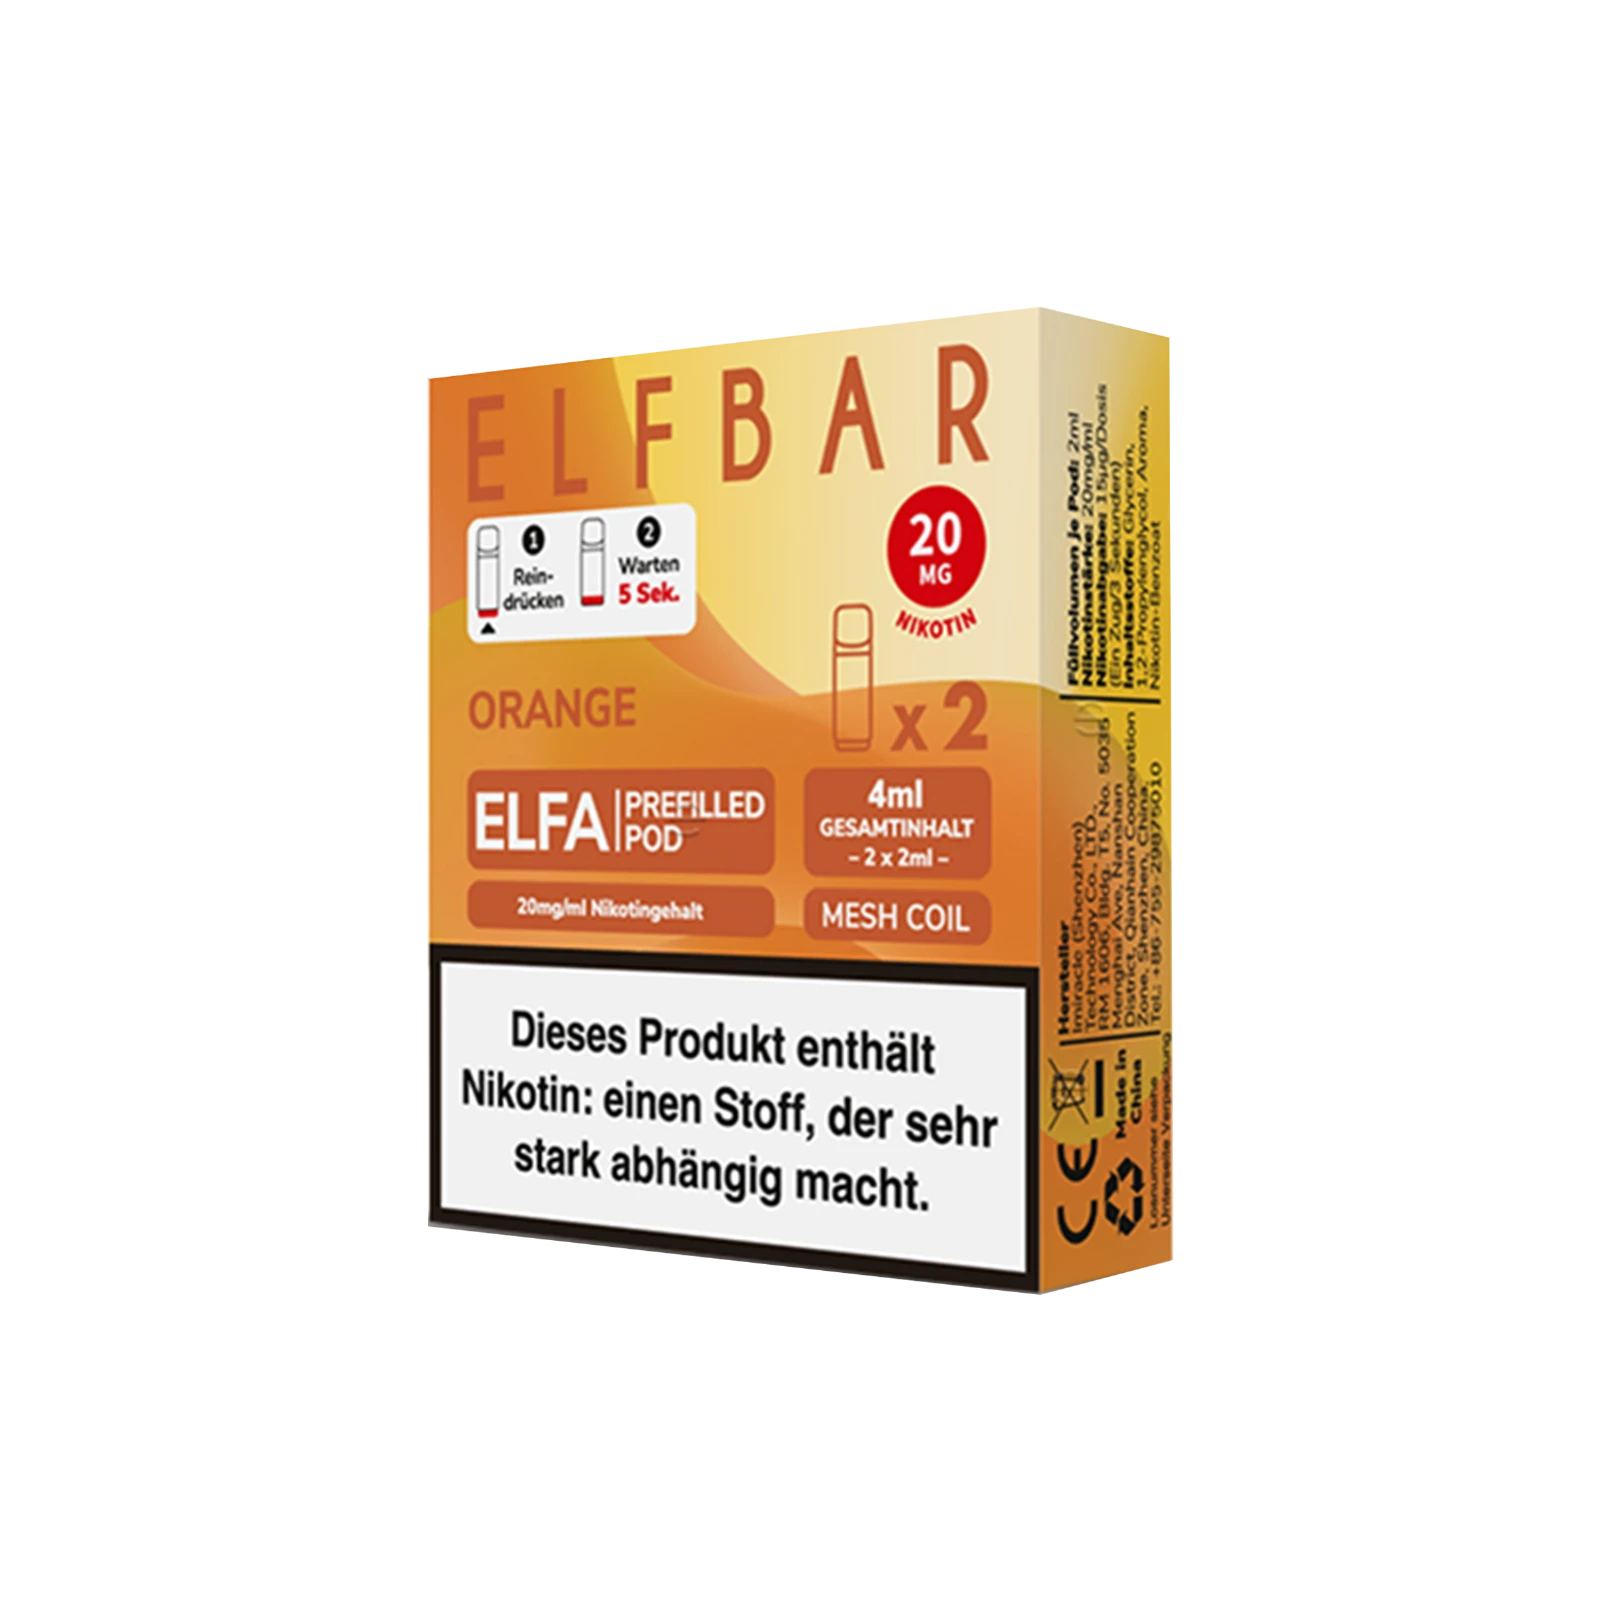 Elf Bar ELFA CP Prefilled Pod Orange | Neue Liquid Sorten1